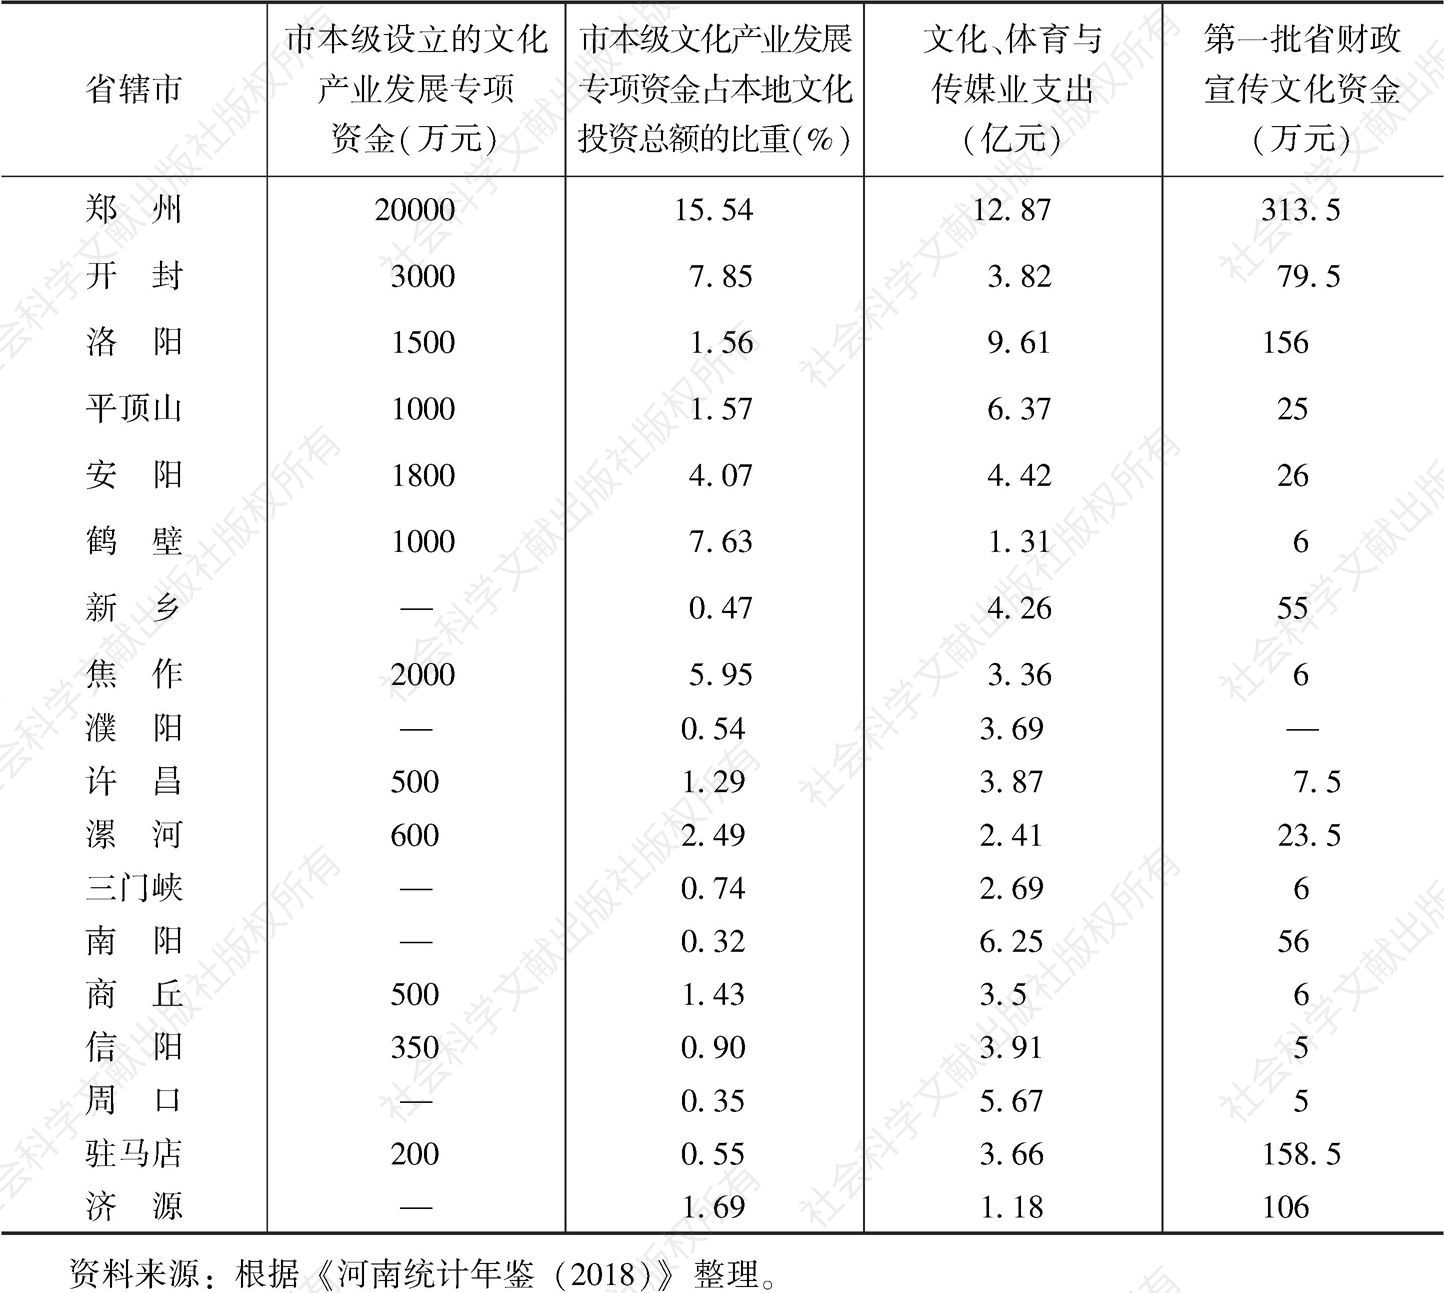 表9 2018年河南18个省辖市文化产业专项资金投入情况统计